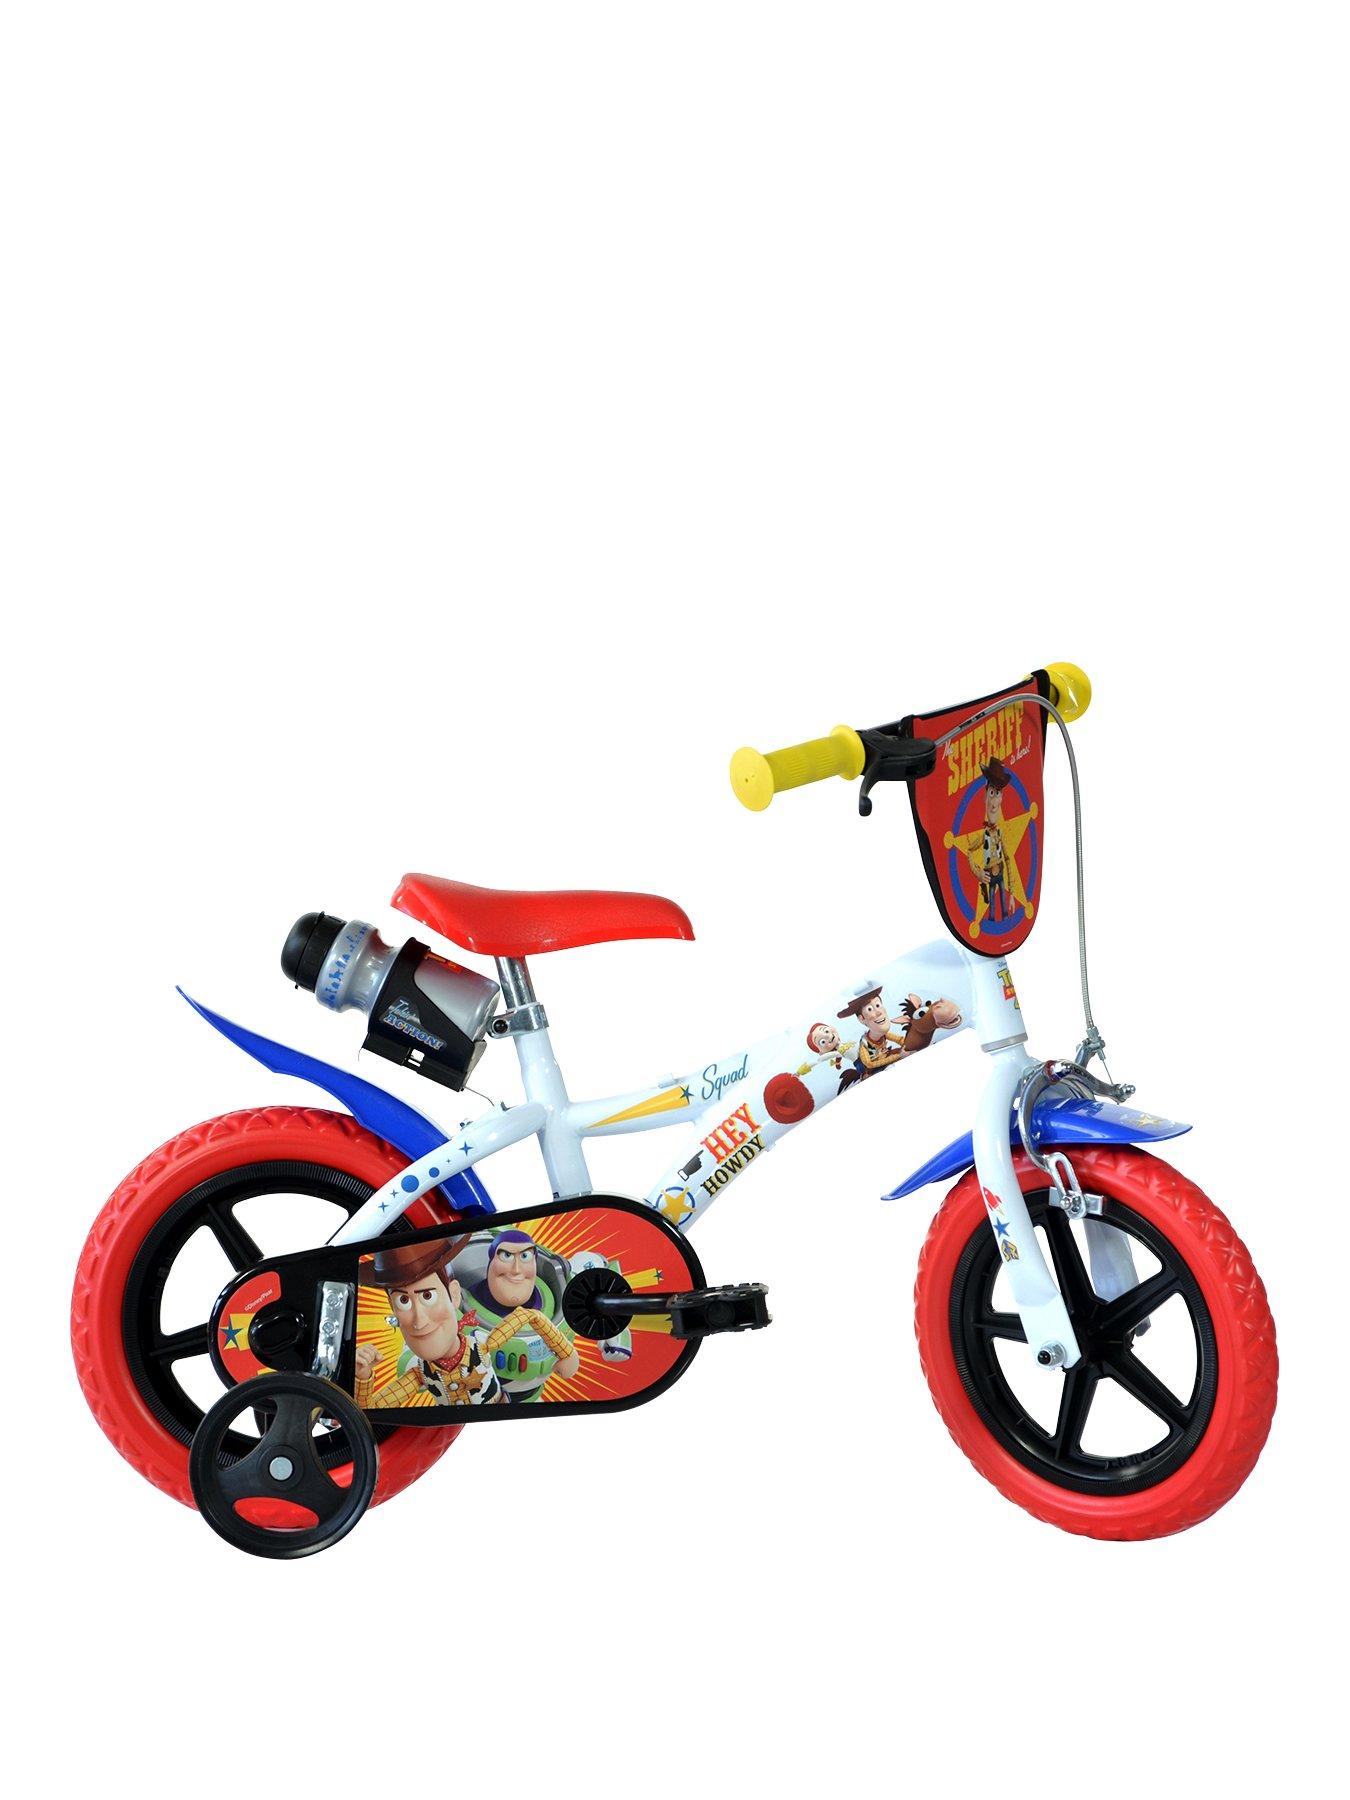 toy story 12 inch bike